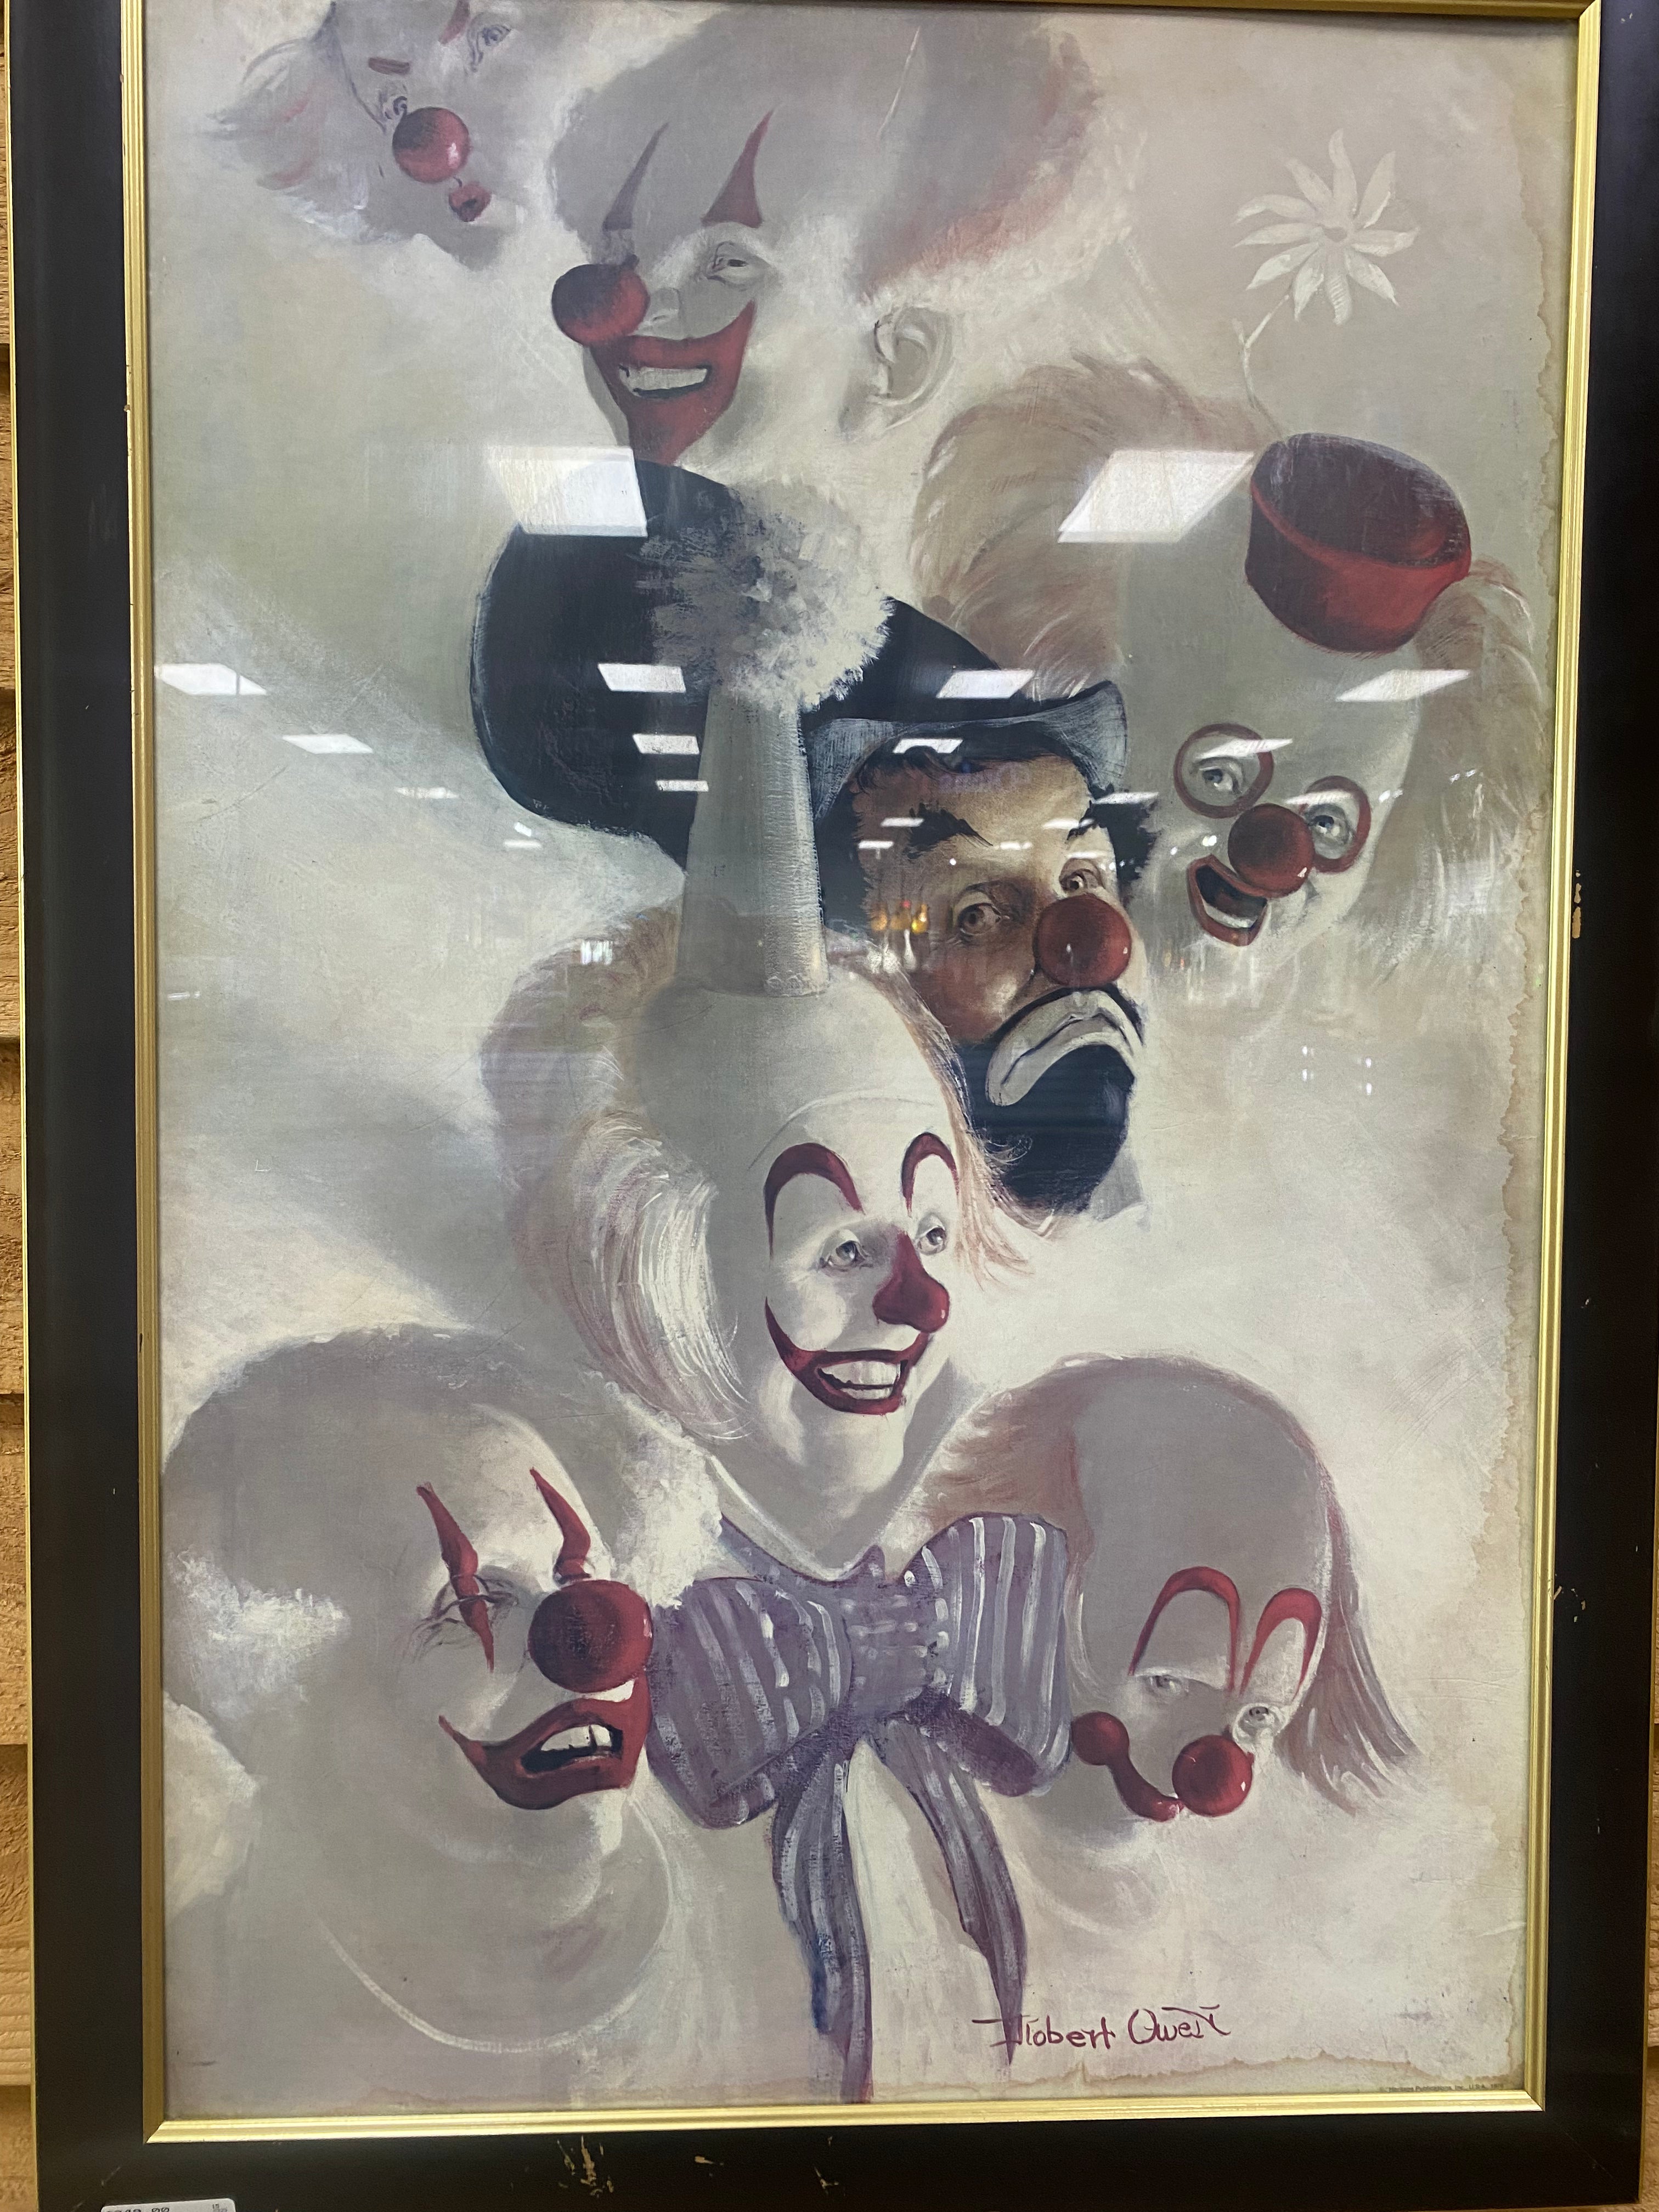 Robert Owen 7 faces of a clown (painting)